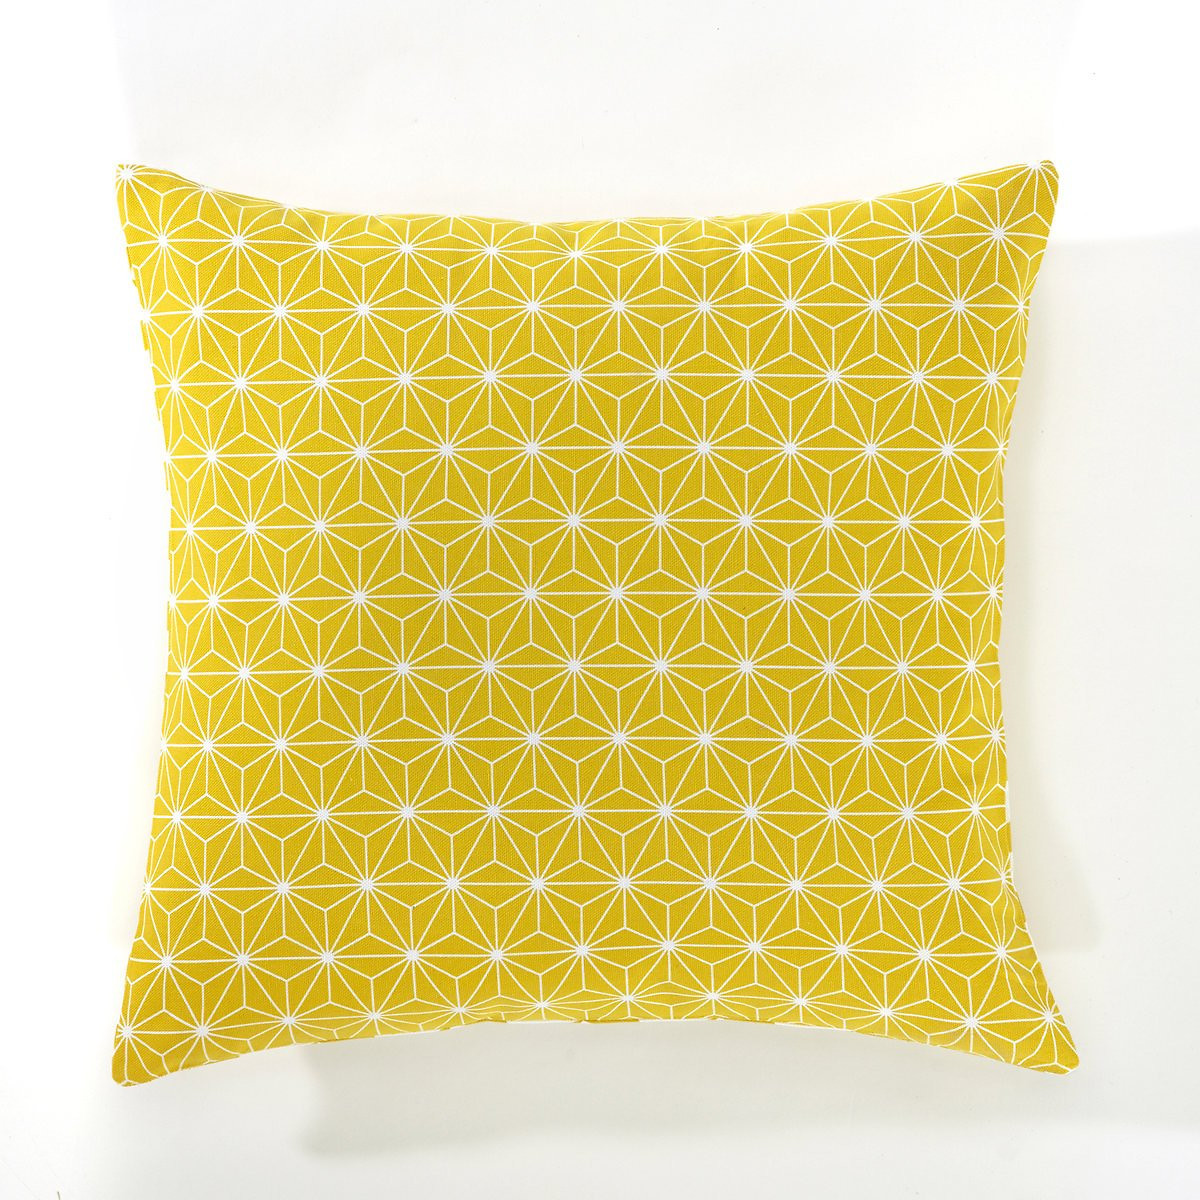 Чехол La Redoute На подушку LOZANGE 40 x 40 см желтый, размер 40 x 40 см - фото 1